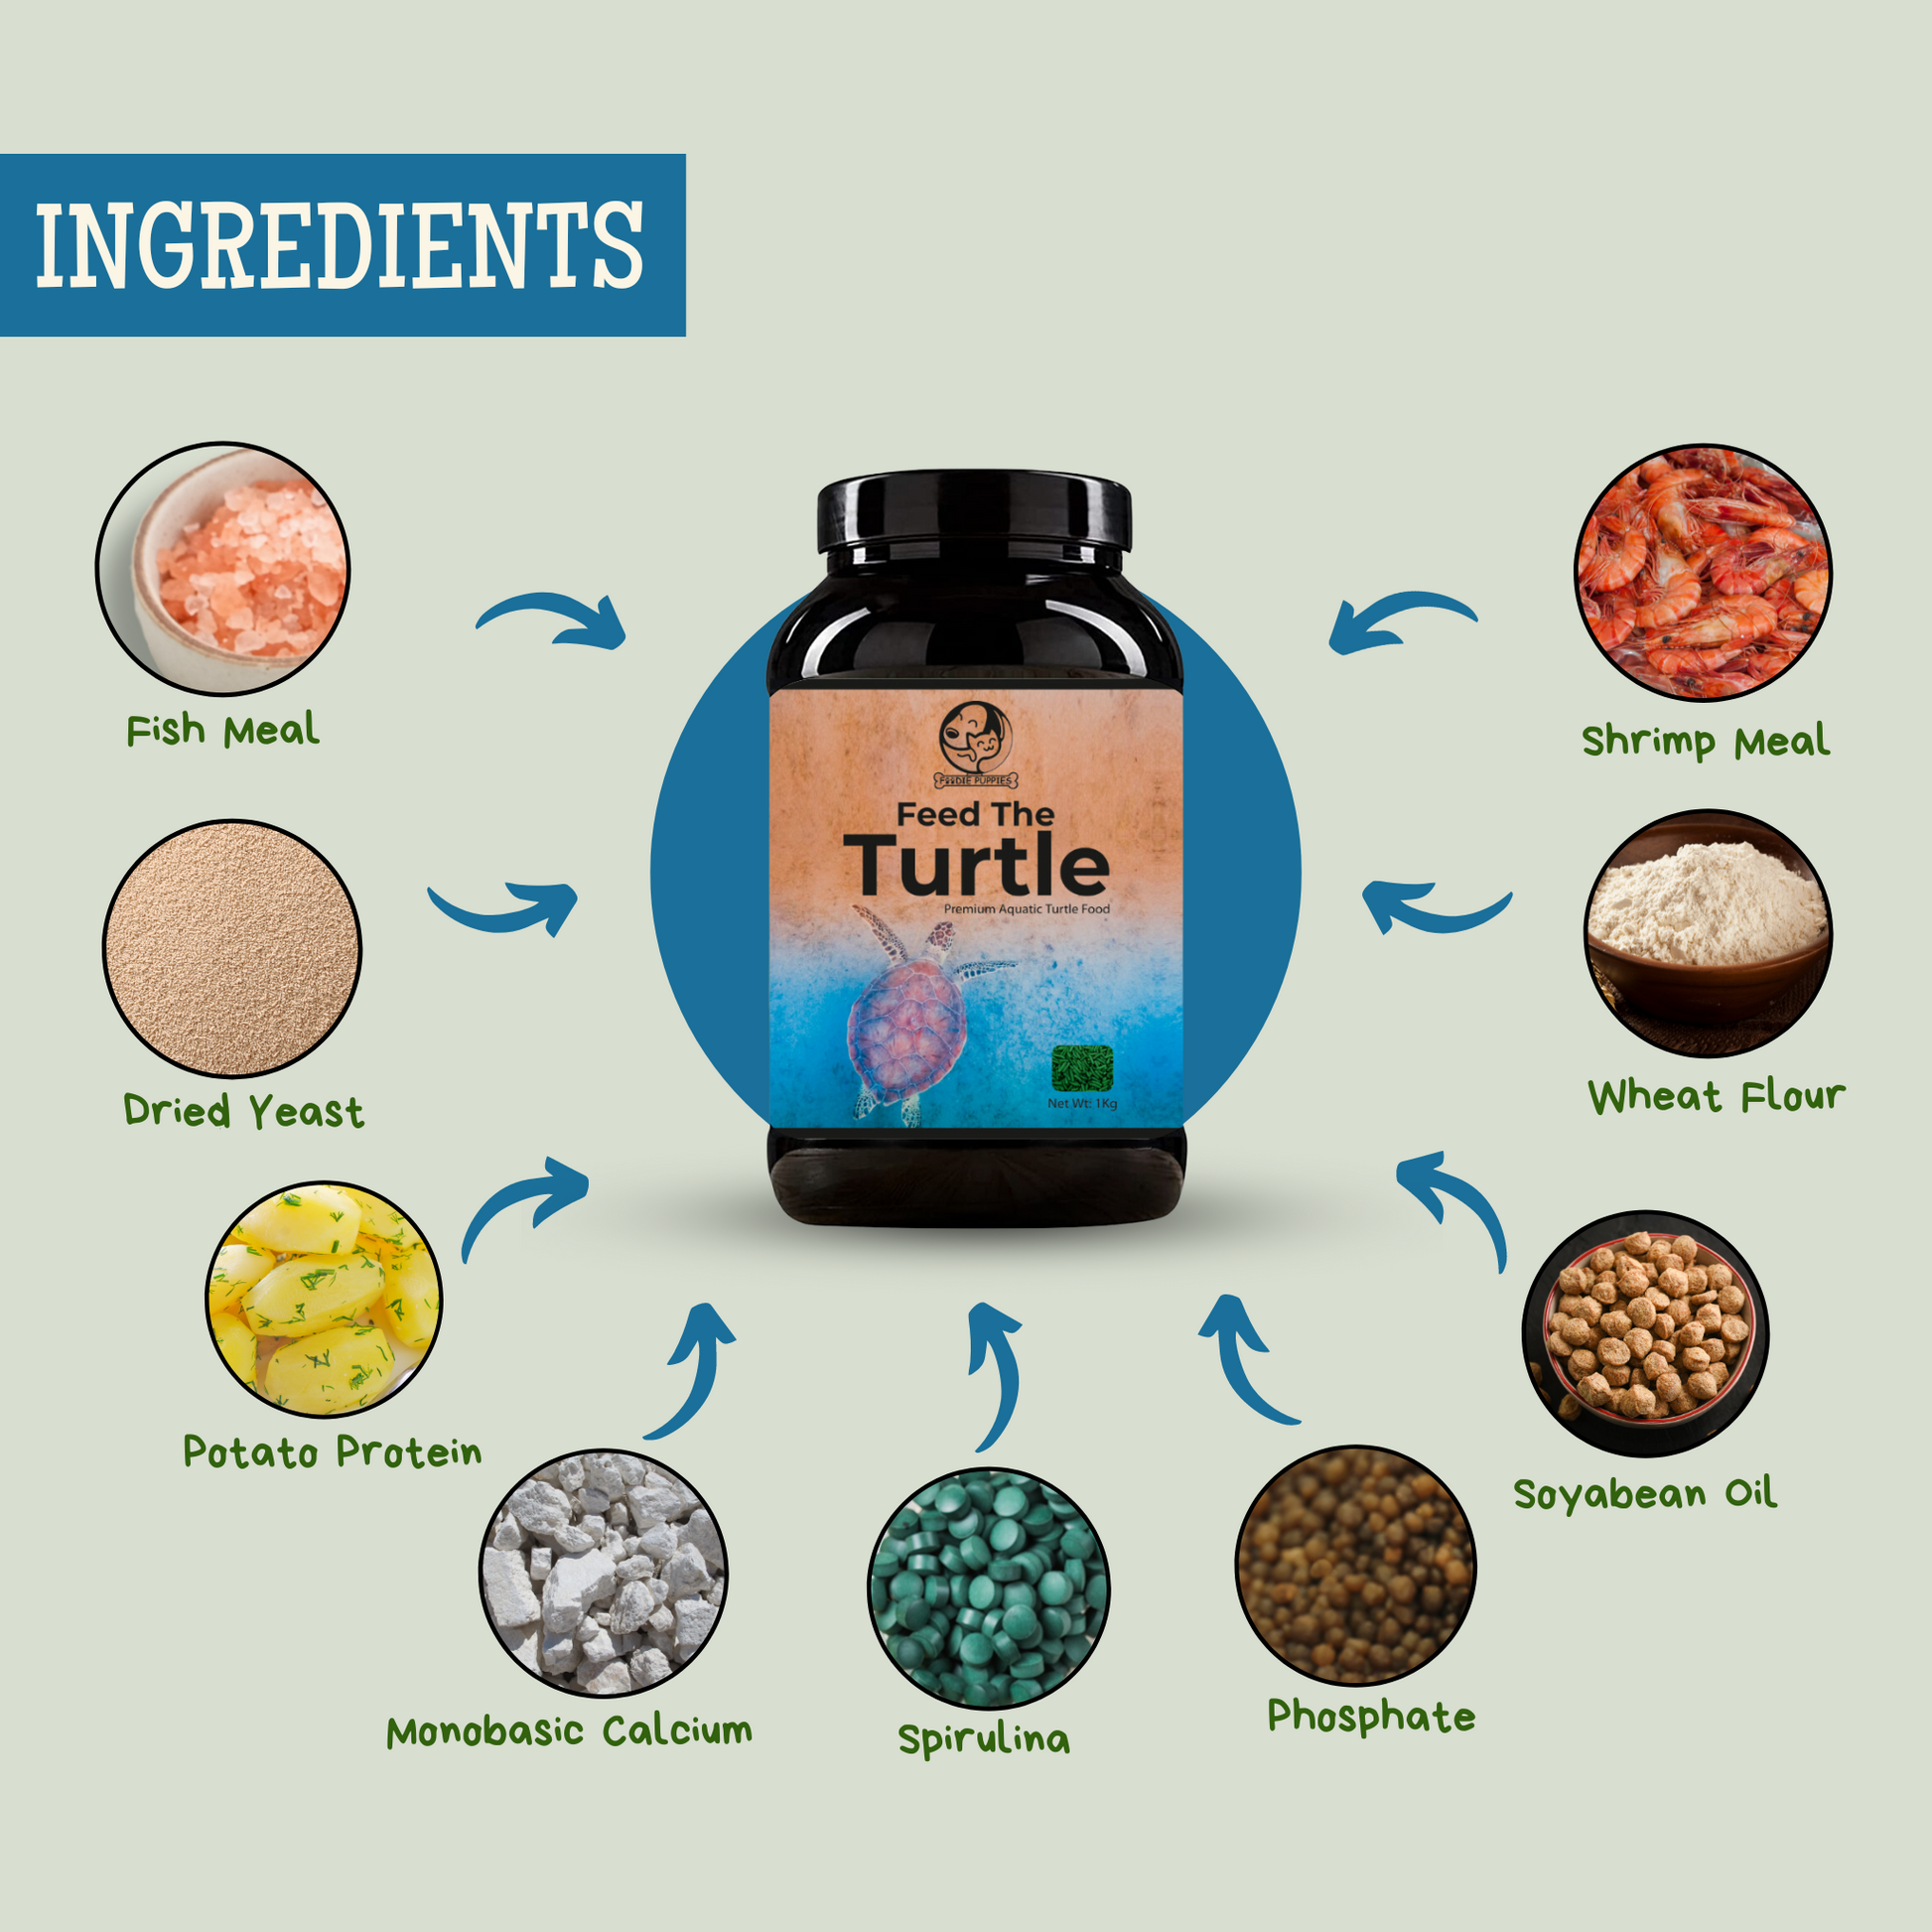 Nutritional Turtle Food